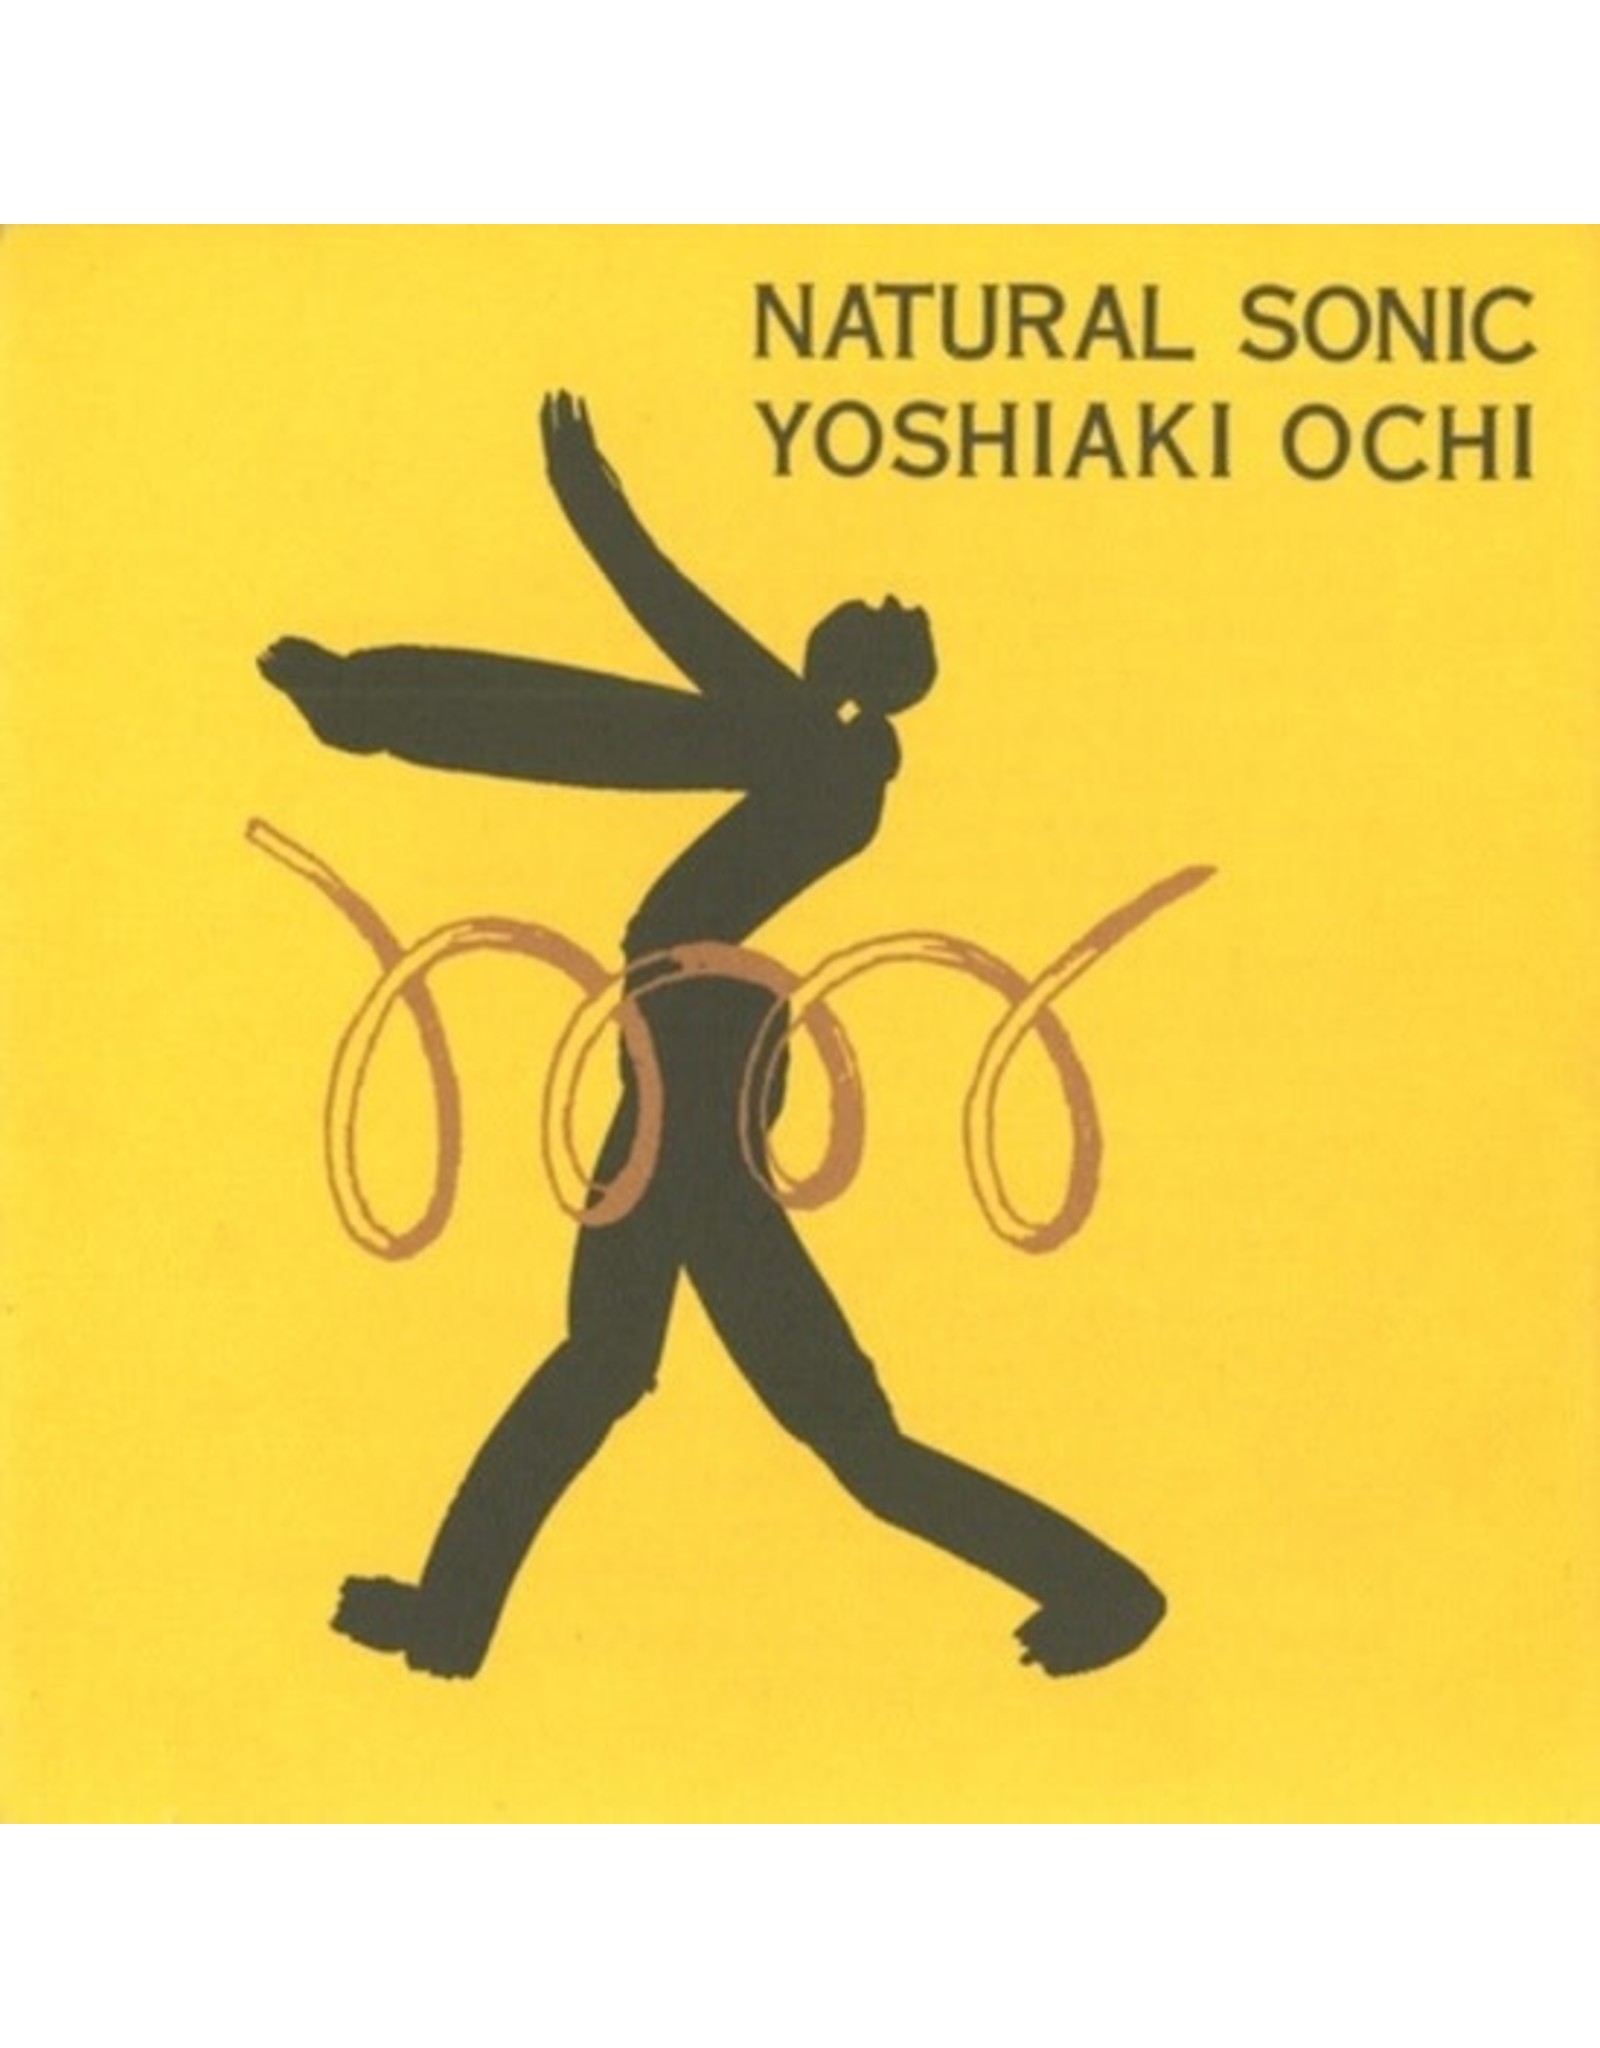 Ochi, Yoshiaki: Natural Sonic LP